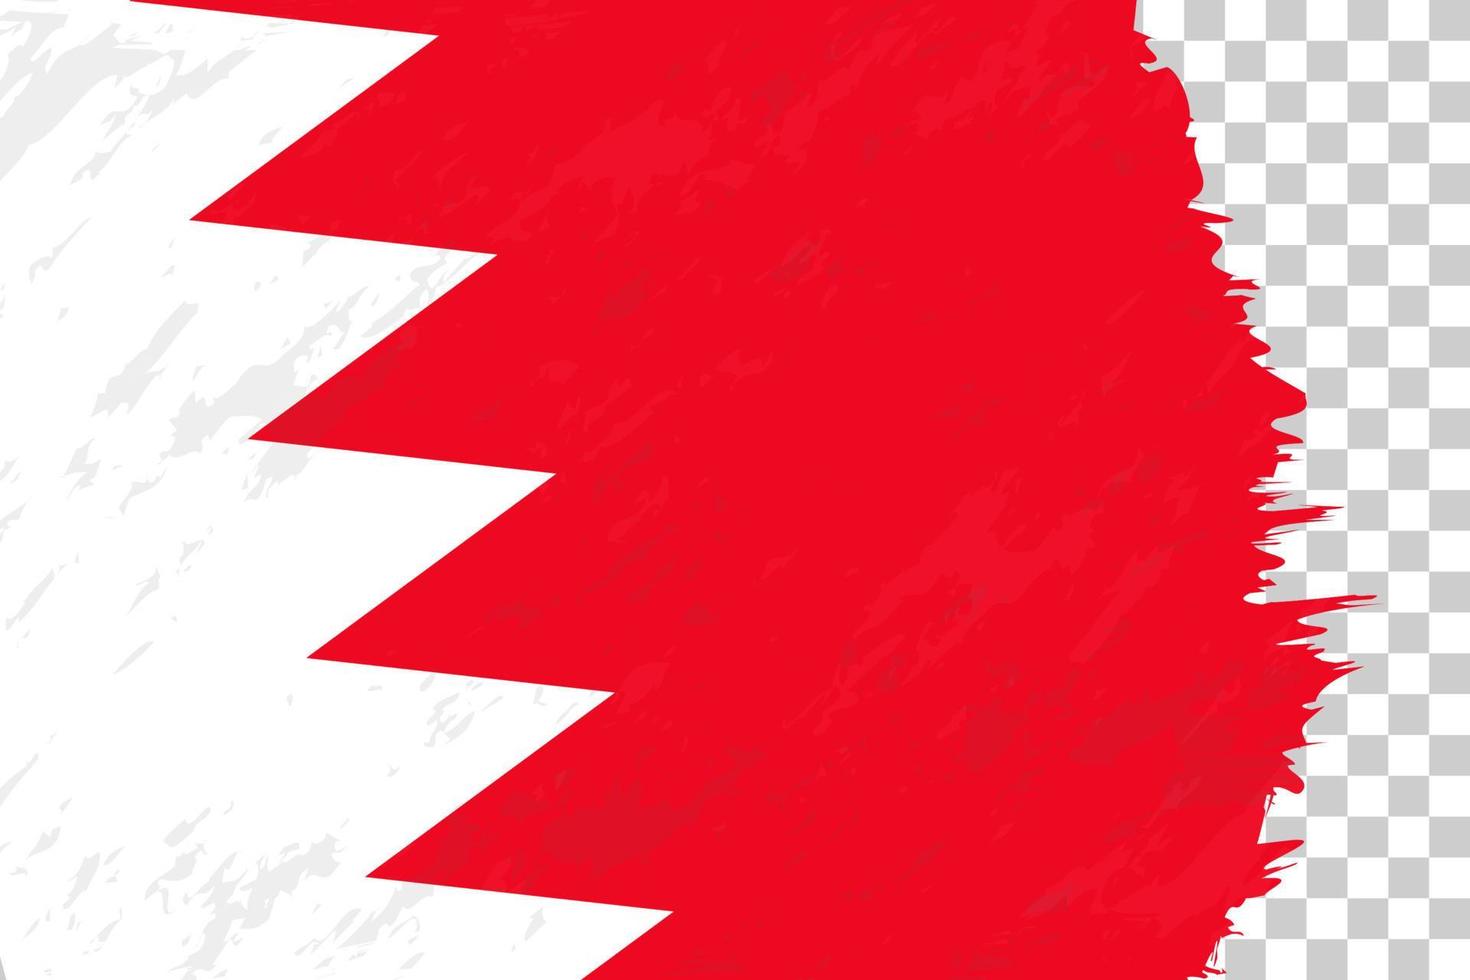 grunge abstrait horizontal brossé drapeau de bahreïn sur une grille transparente. vecteur